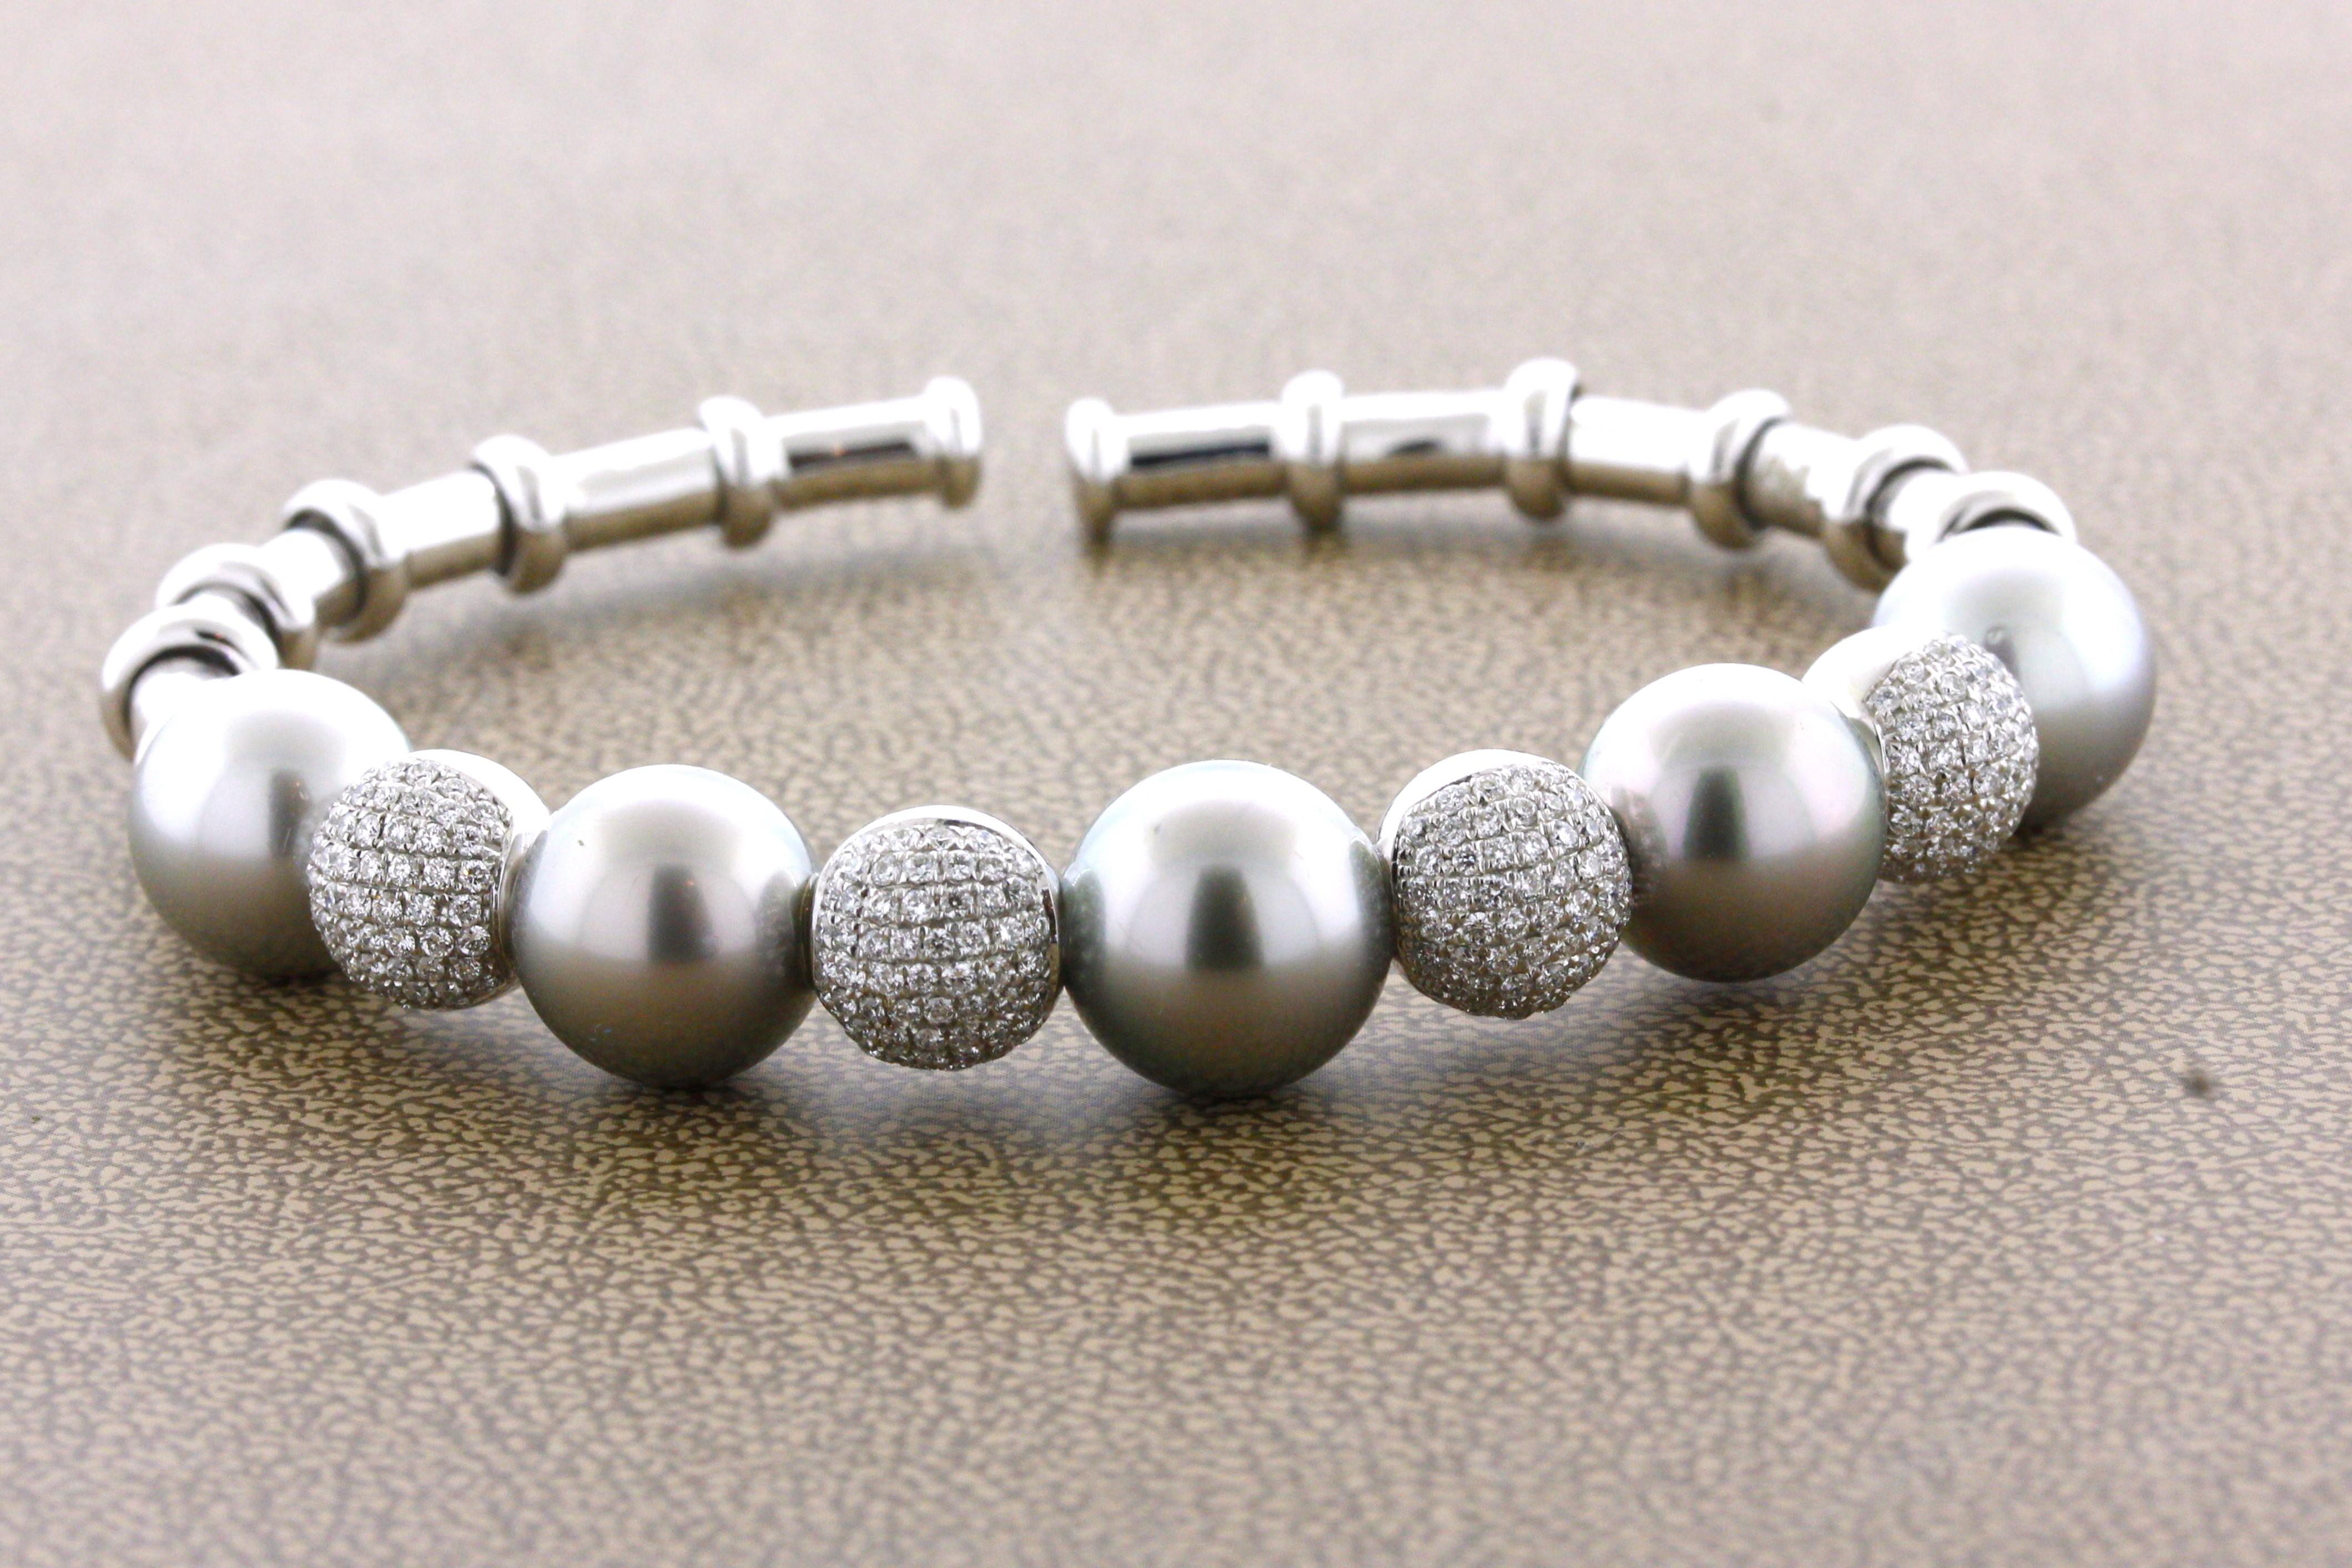 Eine schöne und schicke Armspange mit 5 hochwertigen Tahiti-Perlen. Sie messen jeweils 10 bis 11 Millimeter, sind frei von Fehlern und haben eine satte Silber-Tahiti-Farbe. Zwischen jeder Perle befindet sich eine mit Diamanten besetzte Goldkugel,